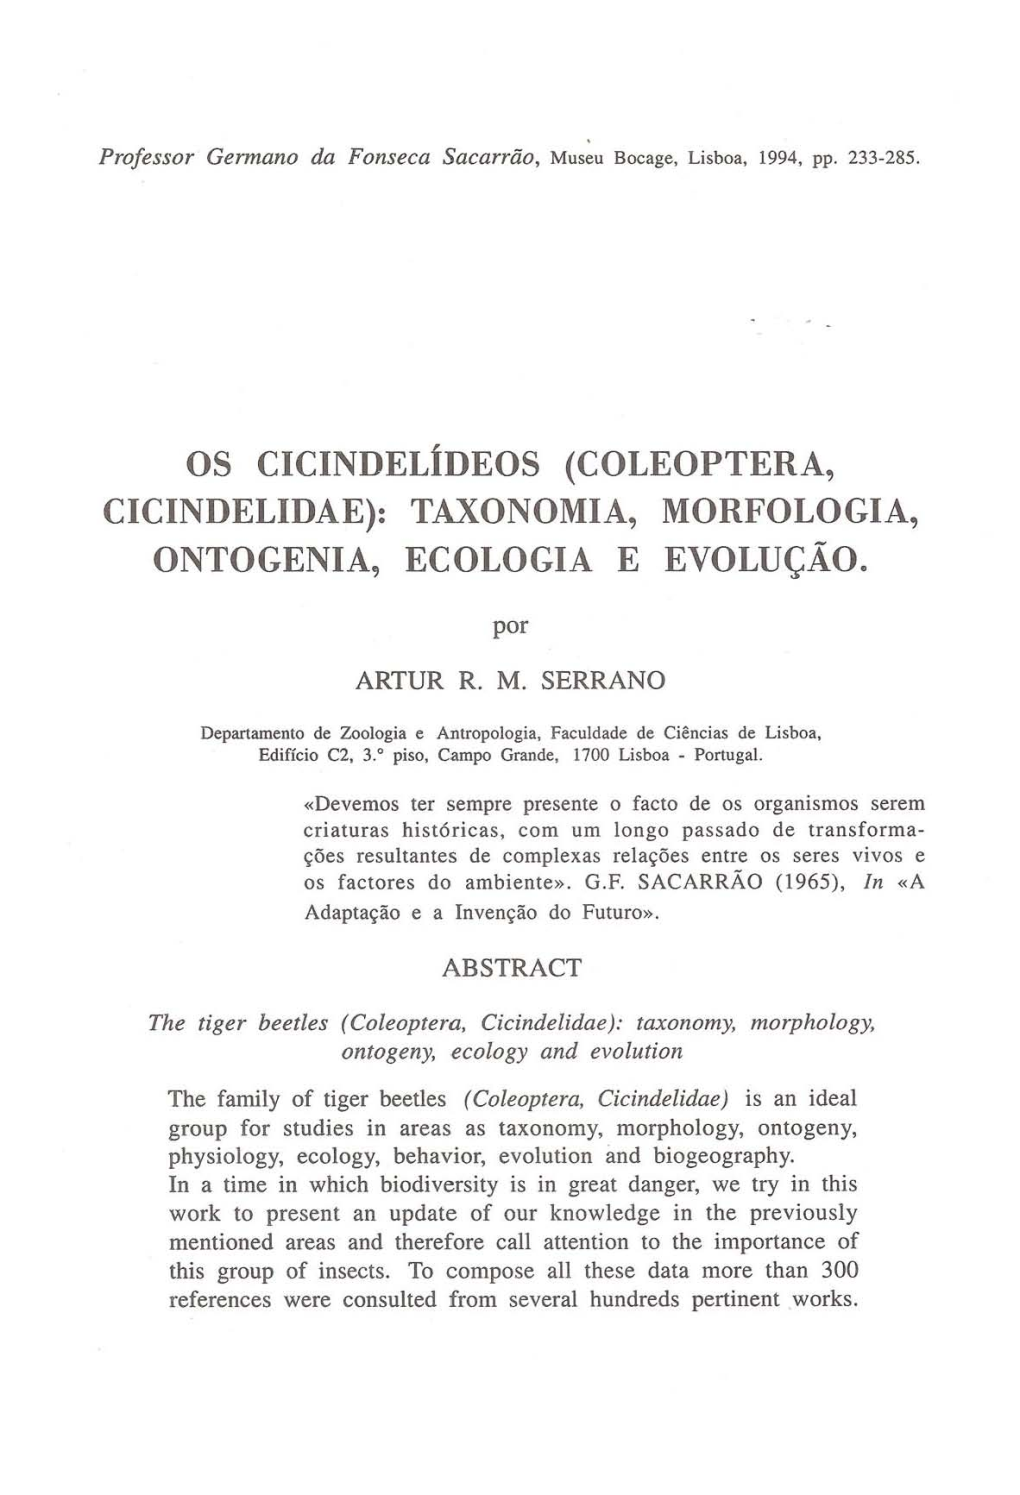 Os Cicindelídeos (COLEOPTERA, CICINDELIDAE): TAXONOMIA, MORFOLOGIA, ONTOGENIA, ECOLOGIA E EVOLUÇÃO